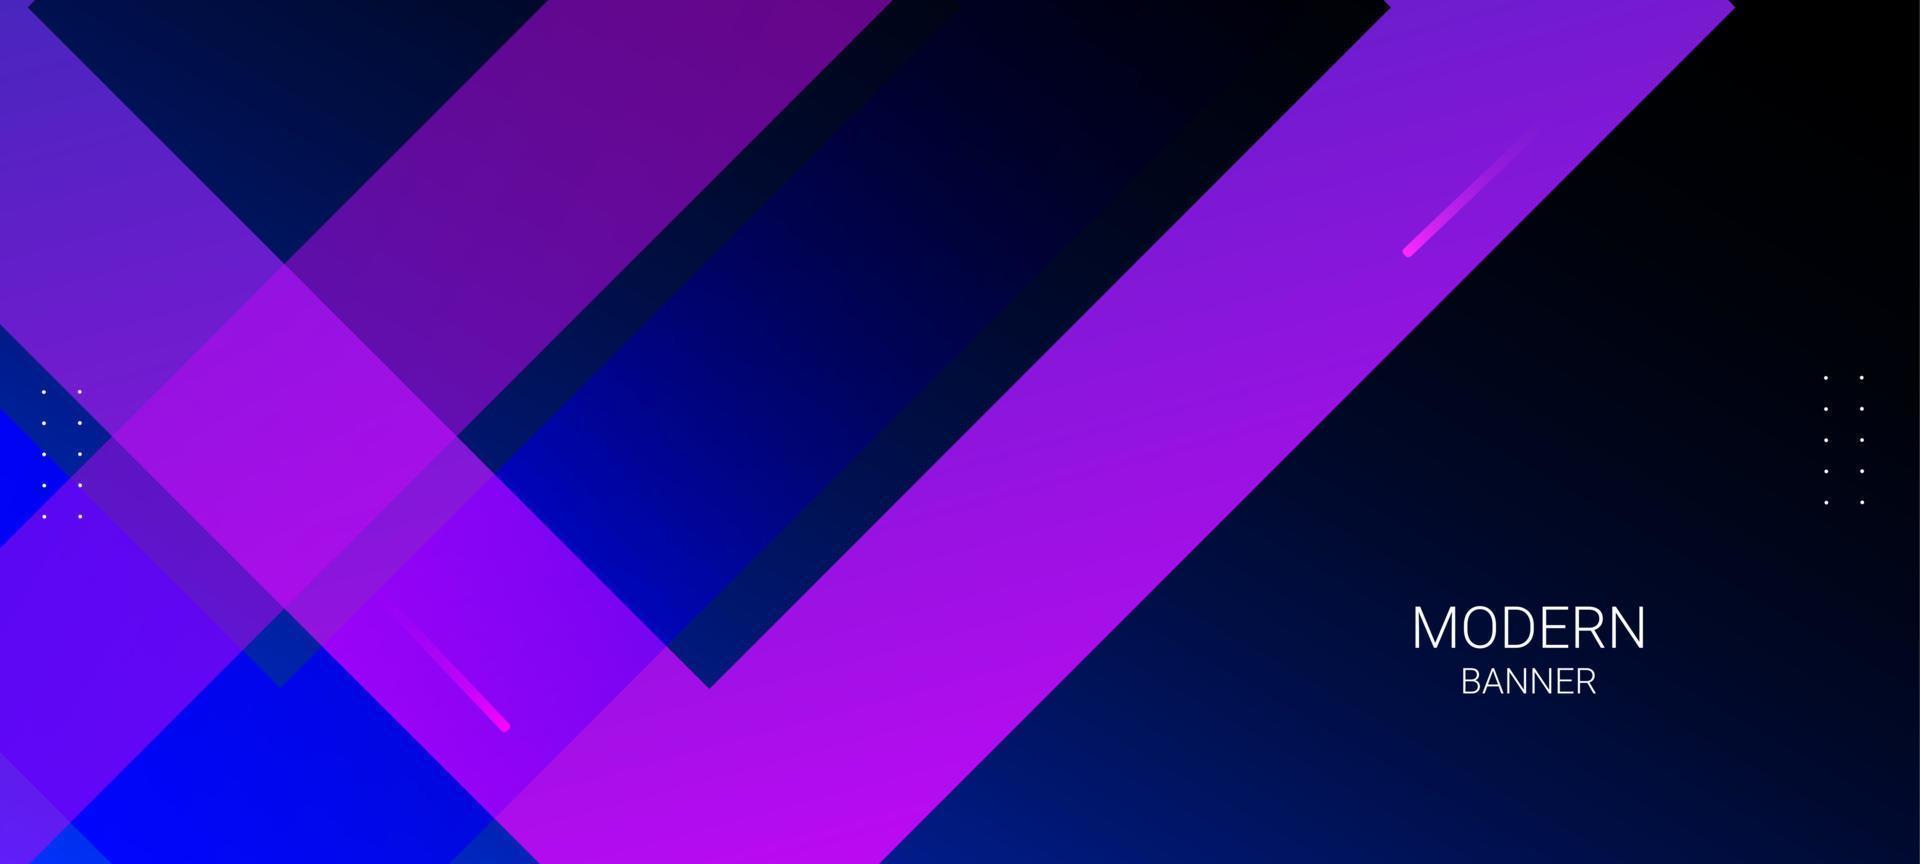 abstraktes blaues Banner mit geometrischem Designmuster vektor